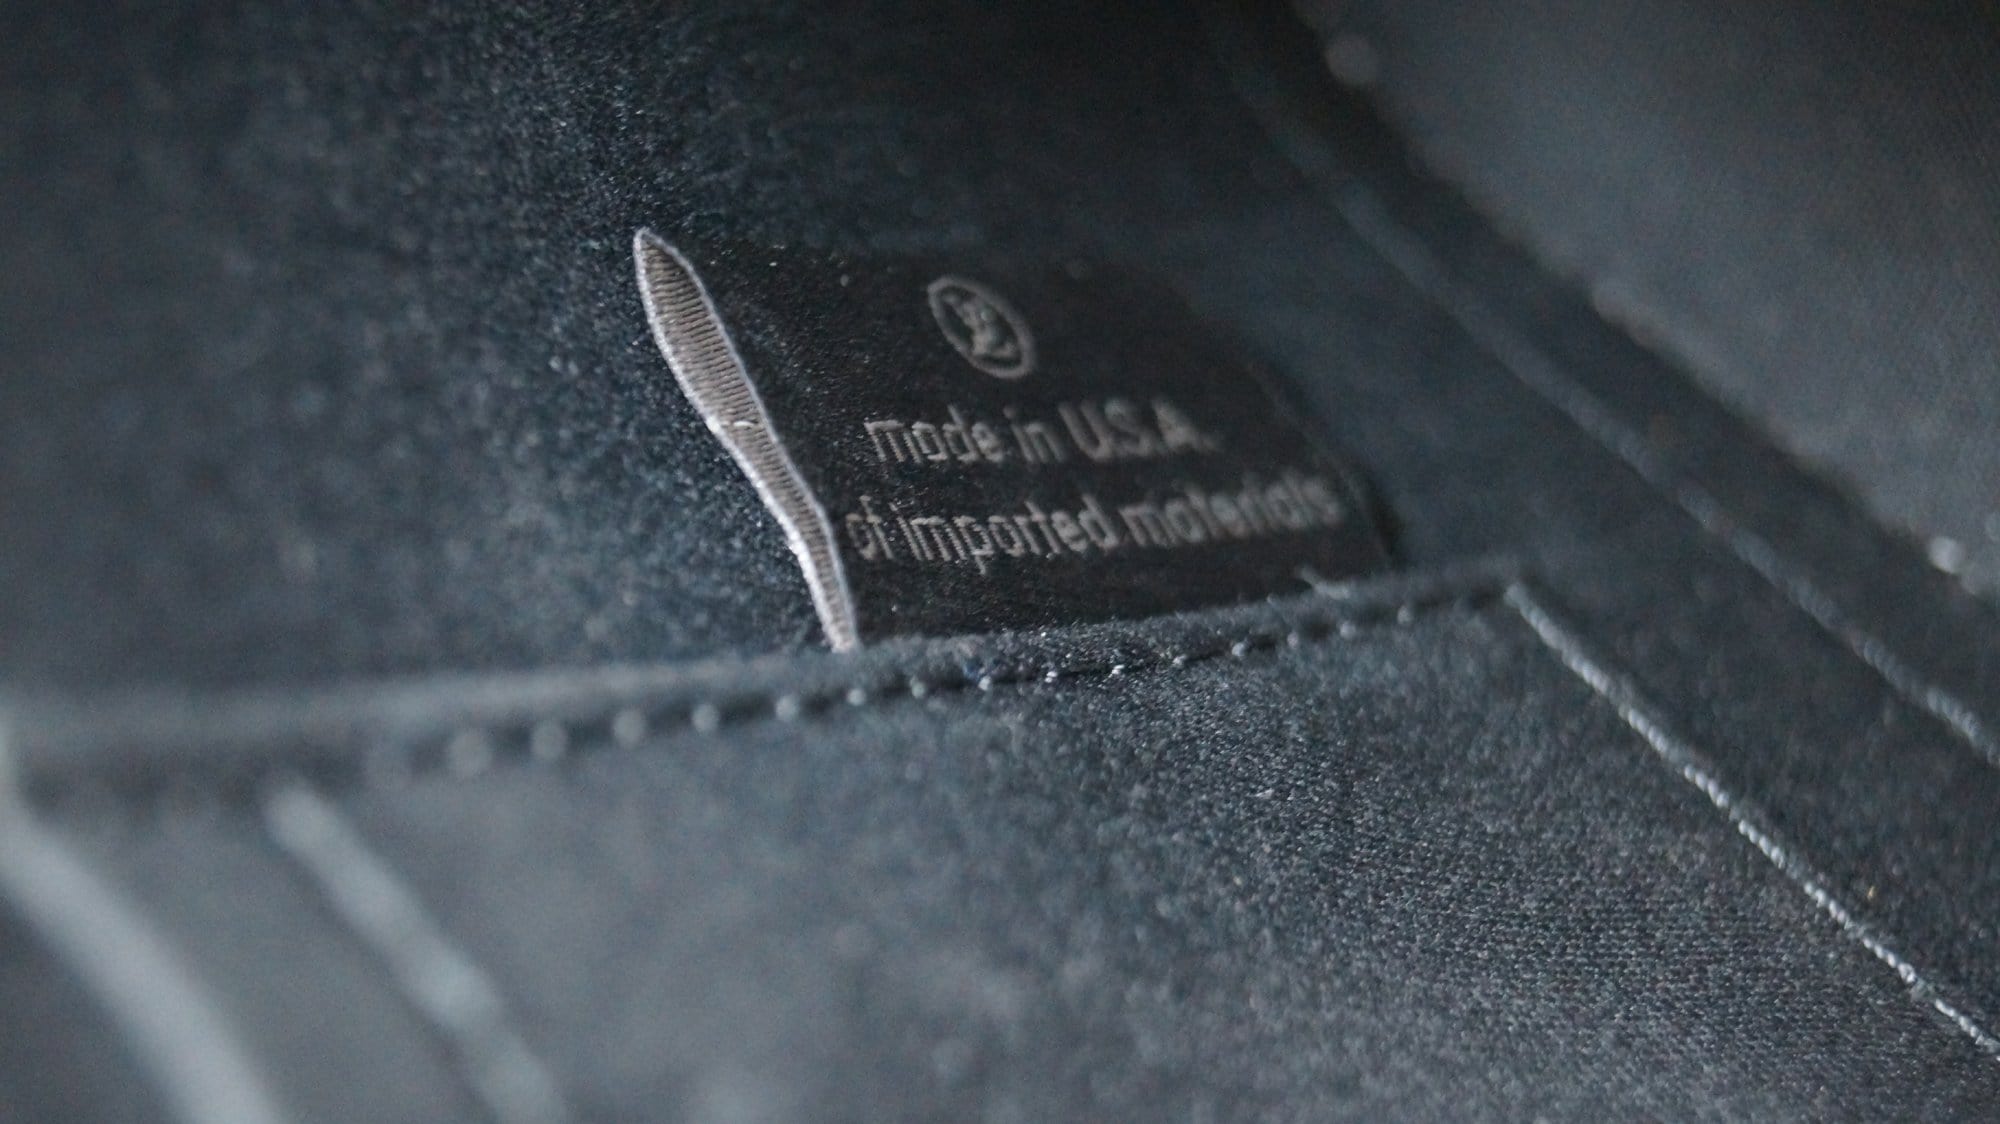 Louis Vuitton Black Magnetique Monogram Vernis Leather Alma BB Bag Louis  Vuitton